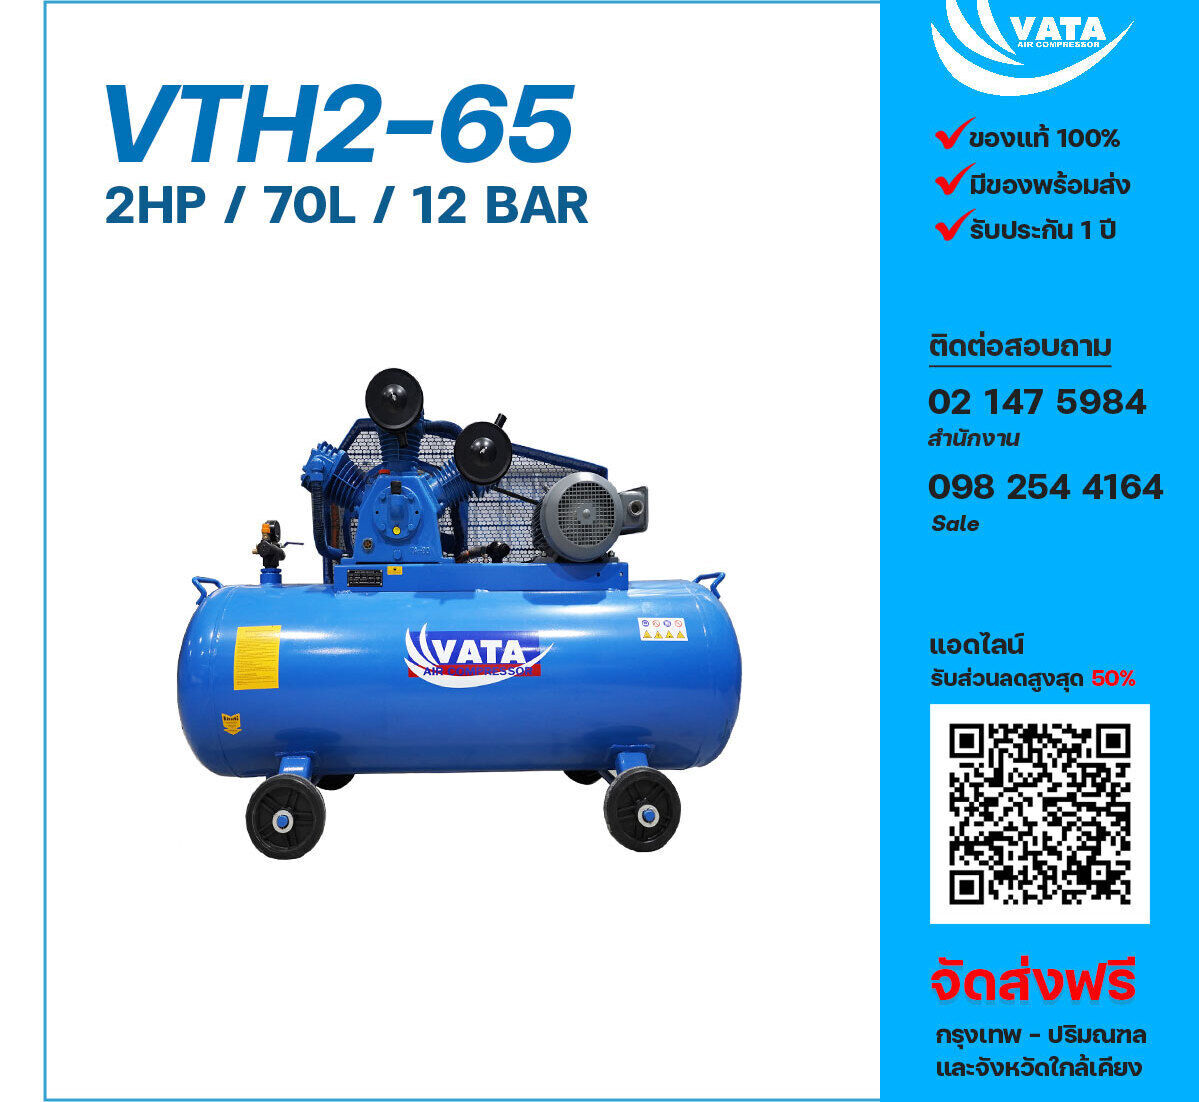 ปั๊มลมวาตะแรงดันสูง VATA Two-Stage VTH2-65 220V ปั๊มลมลูกสูบ ขนาด 3 สูบ 2 แรงม้า 70 ลิตร VATA พร้อมมอเตอร์ ไฟ 220V ส่งฟรี กรุงเทพฯ-ปริมณฑล รับประกัน 1 ปี